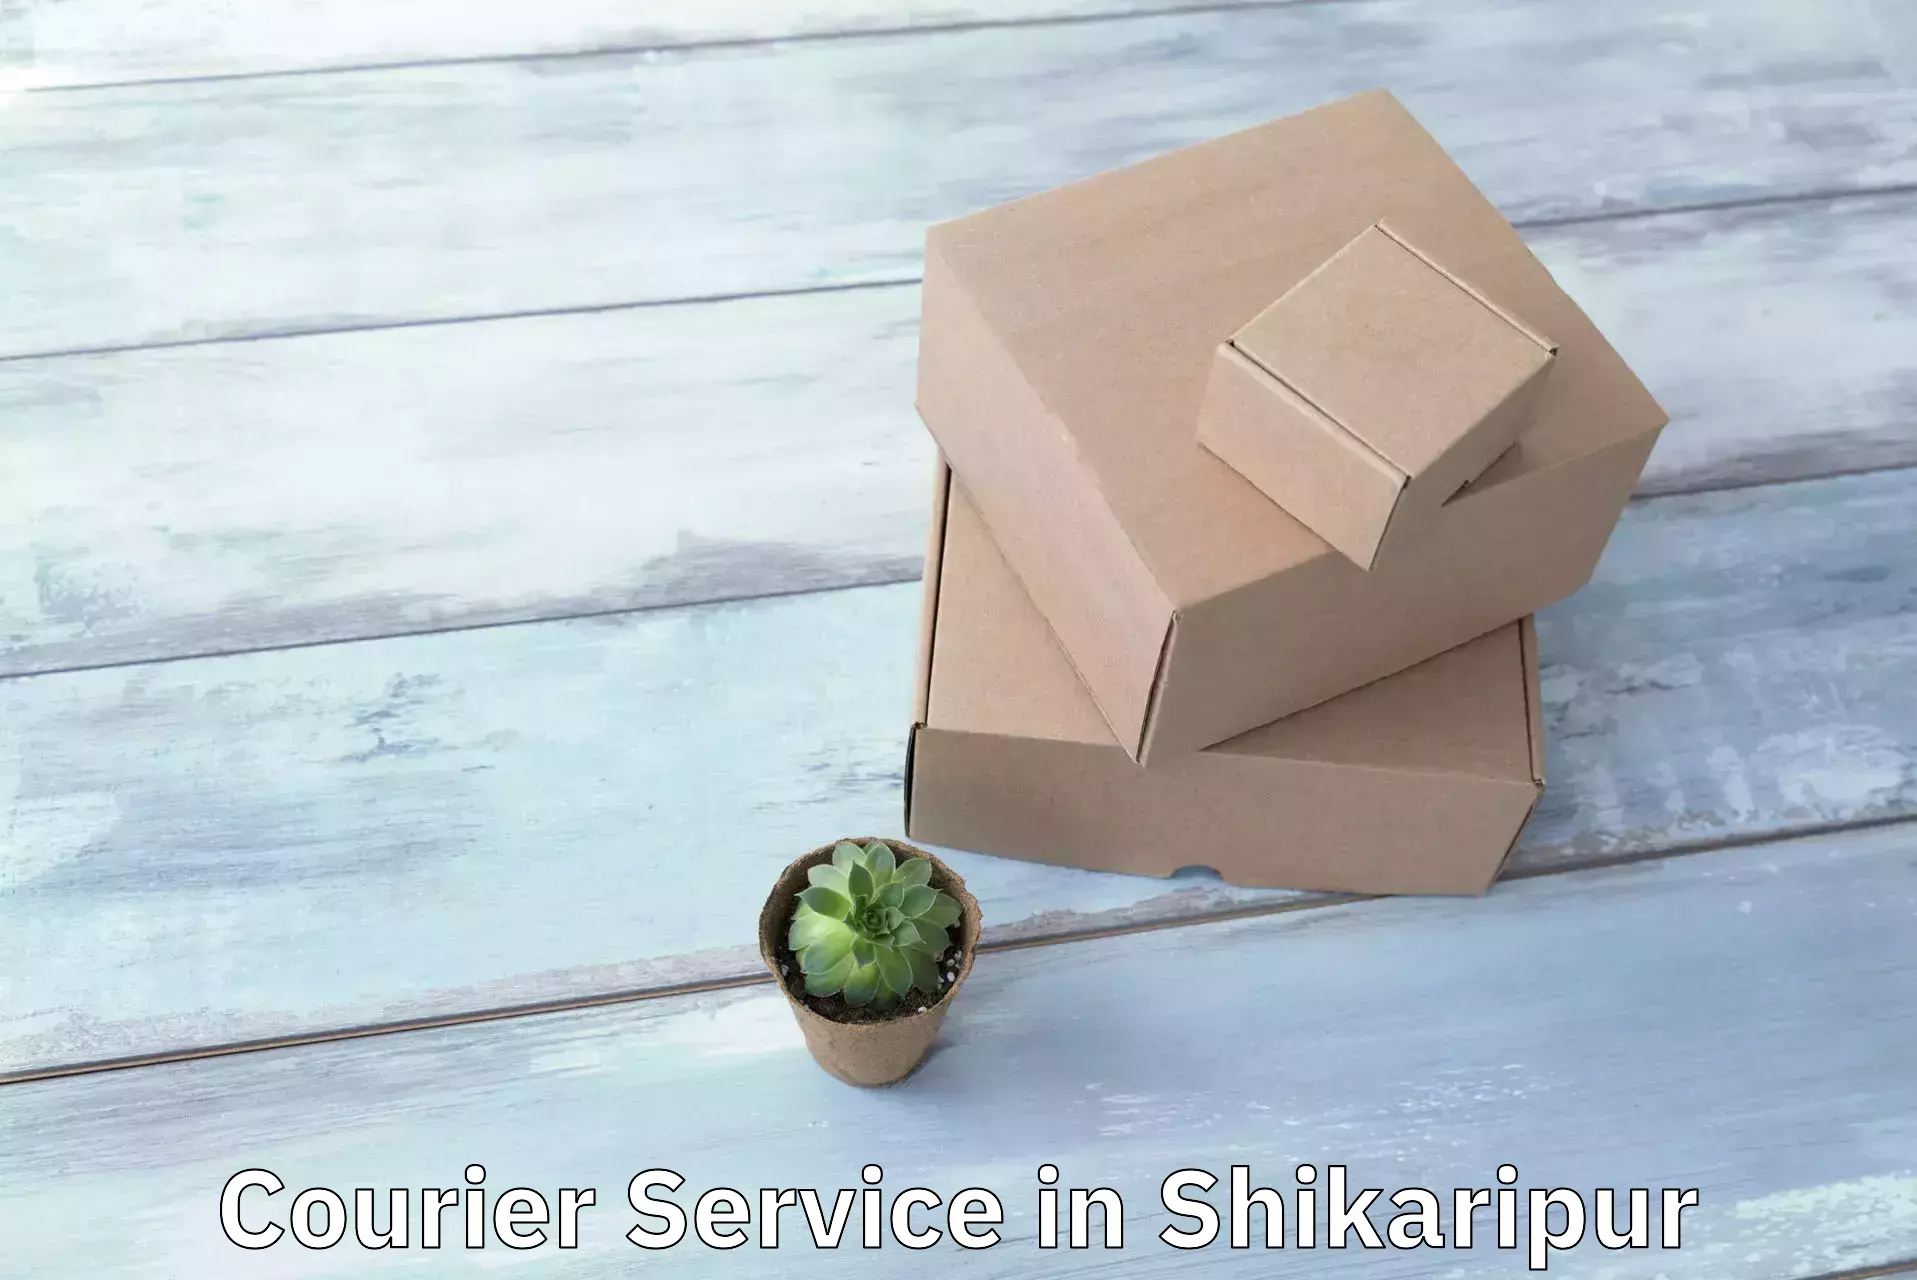 Door-to-door freight service in Shikaripur